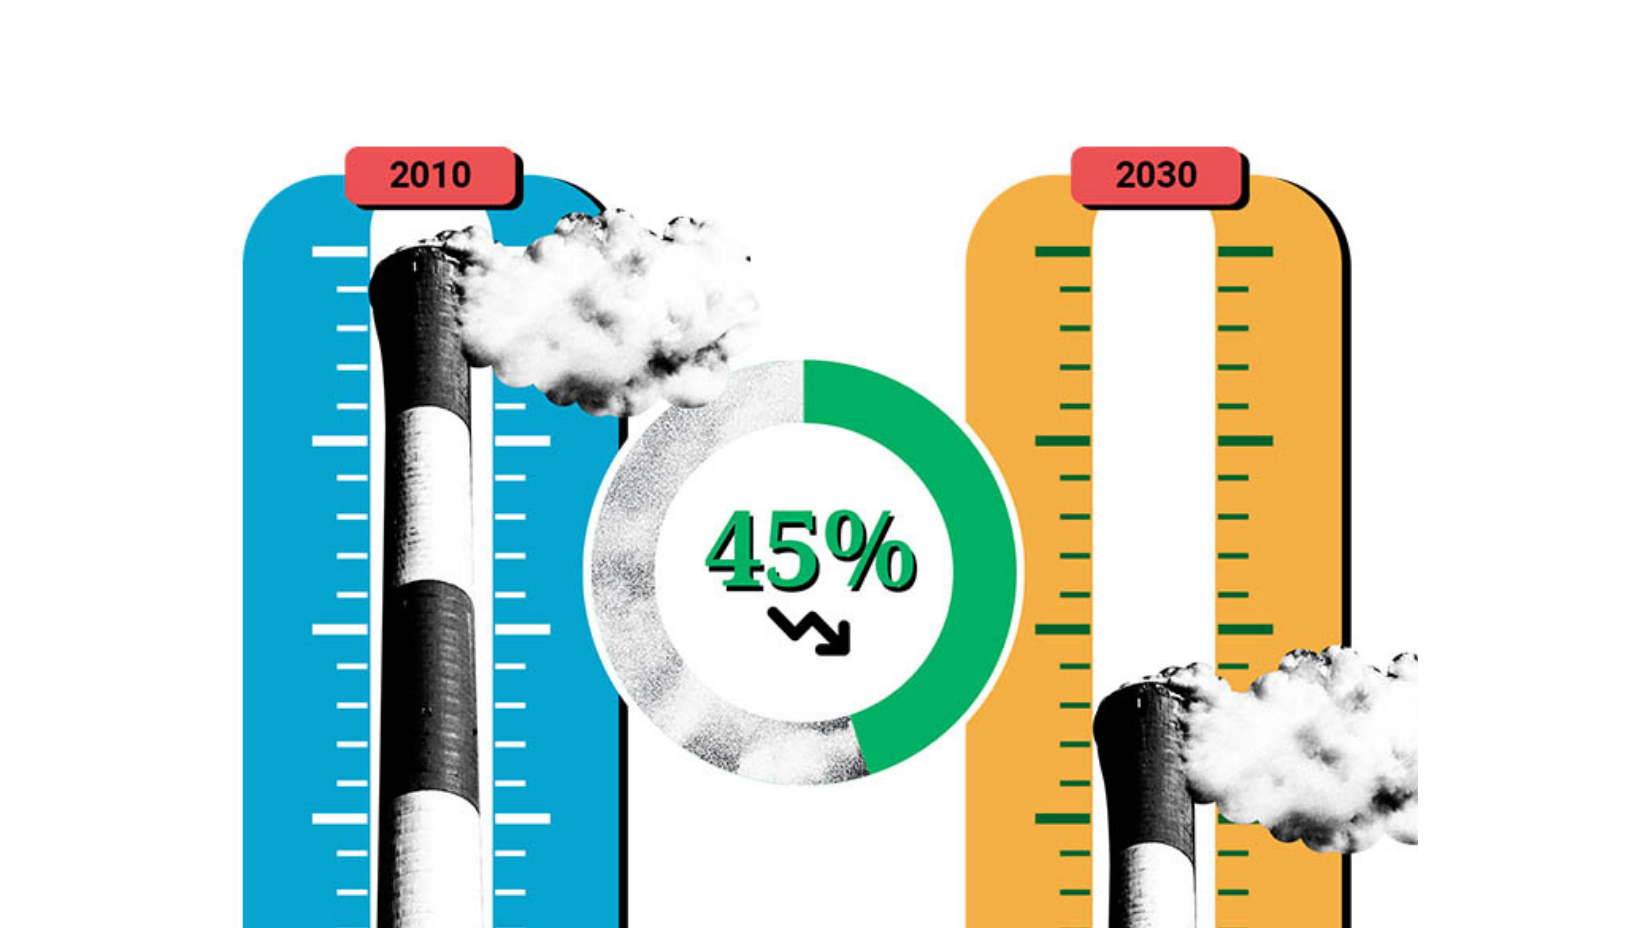 Para manter o aquecimento global em não mais que 1,5°C, como previsto no Acordo de Paris, as emissões precisam ser reduzidas em 45% até 2030 e chegar a emissões líquidas zero até 2050.